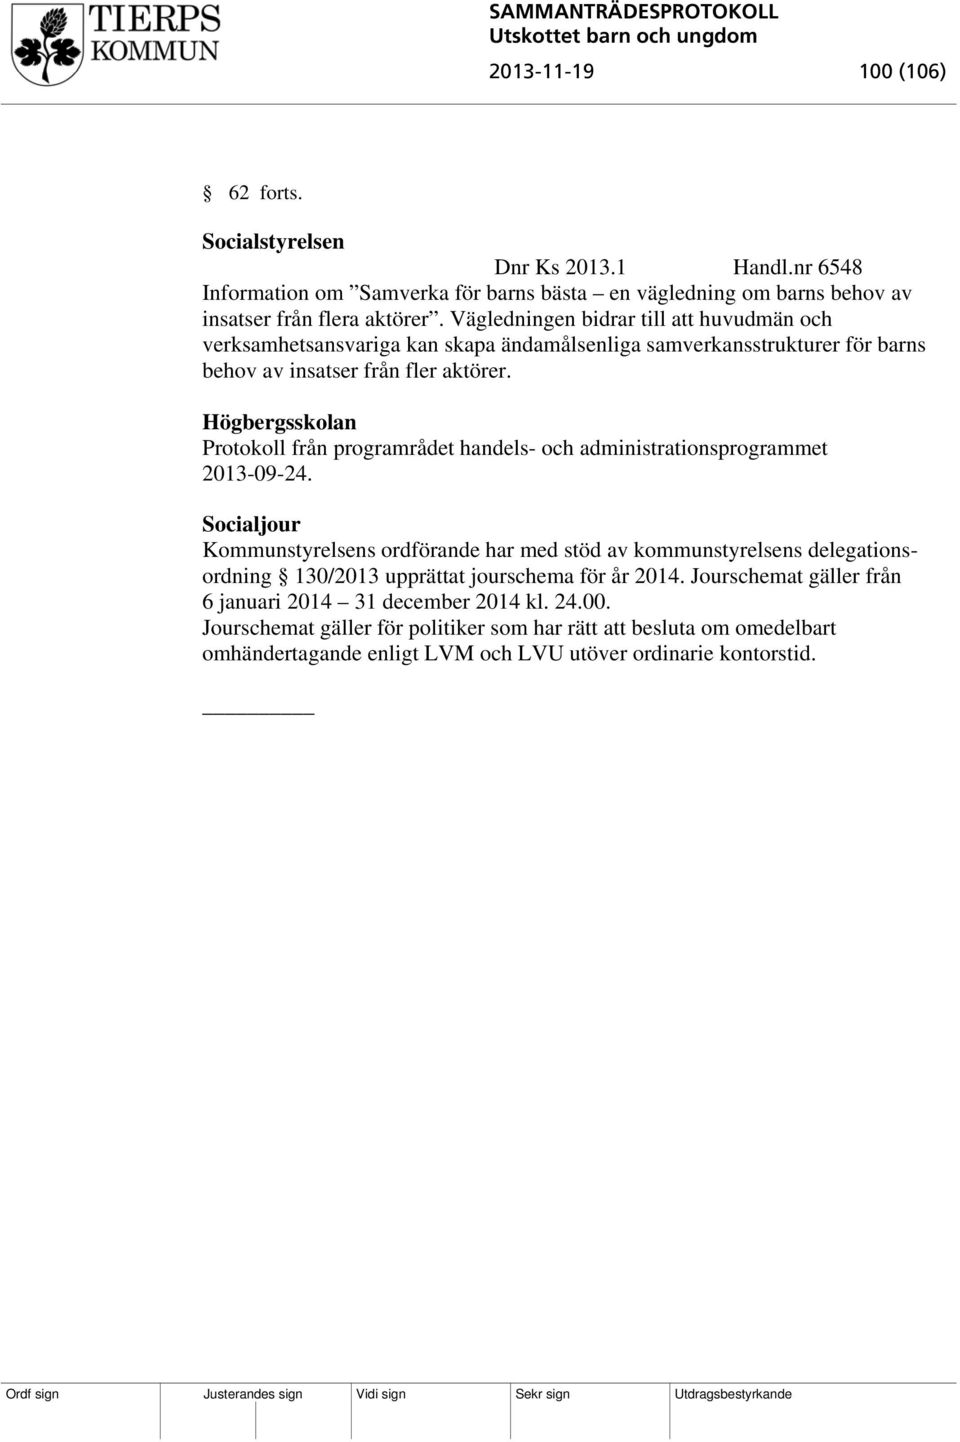 Högbergsskolan Protokoll från programrådet handels- och administrationsprogrammet 2013-09-24.